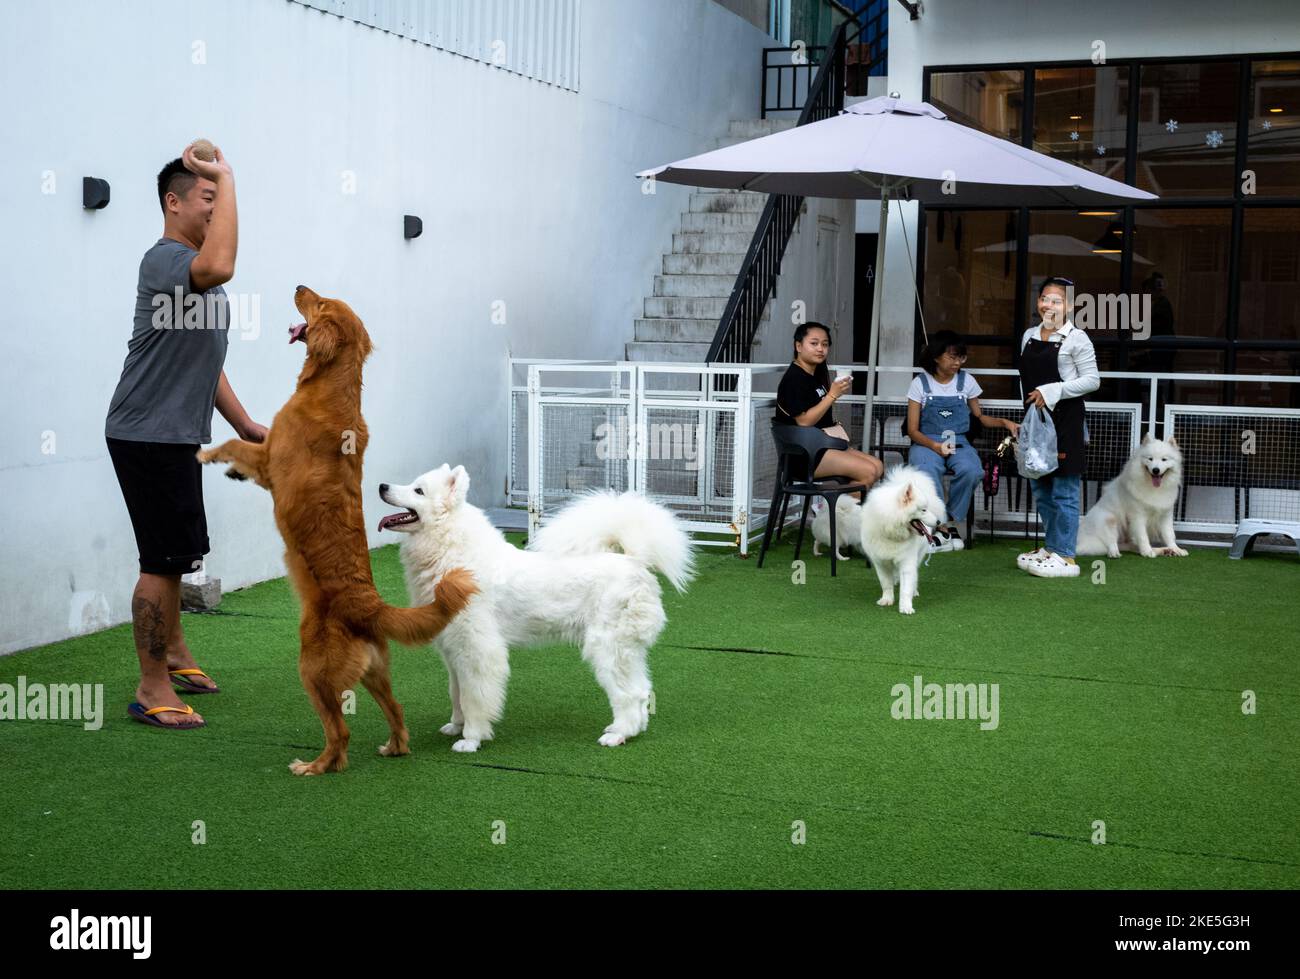 Ein Mann spielt mit reinrassigen Hunden auf einem Kunstrasen-Bereich vor dem Smartdog Cafe, einem Ort, an dem wohlhabende Besitzer teurer Hunde ihr Haustier mitnehmen können Stockfoto